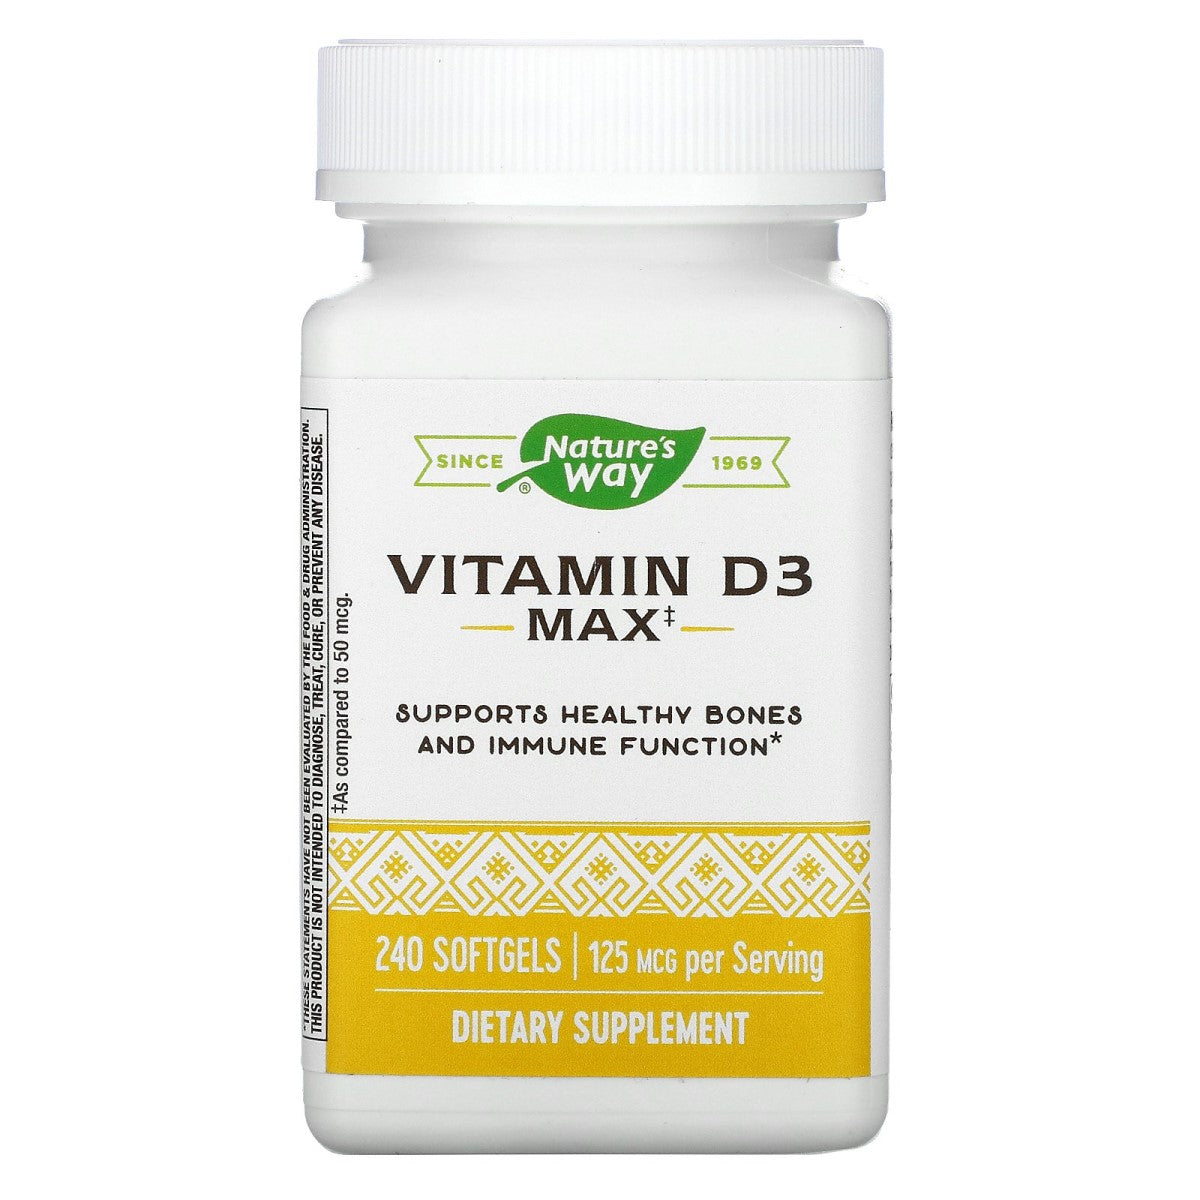 Primary image of Vitamin D3 5,000 IU